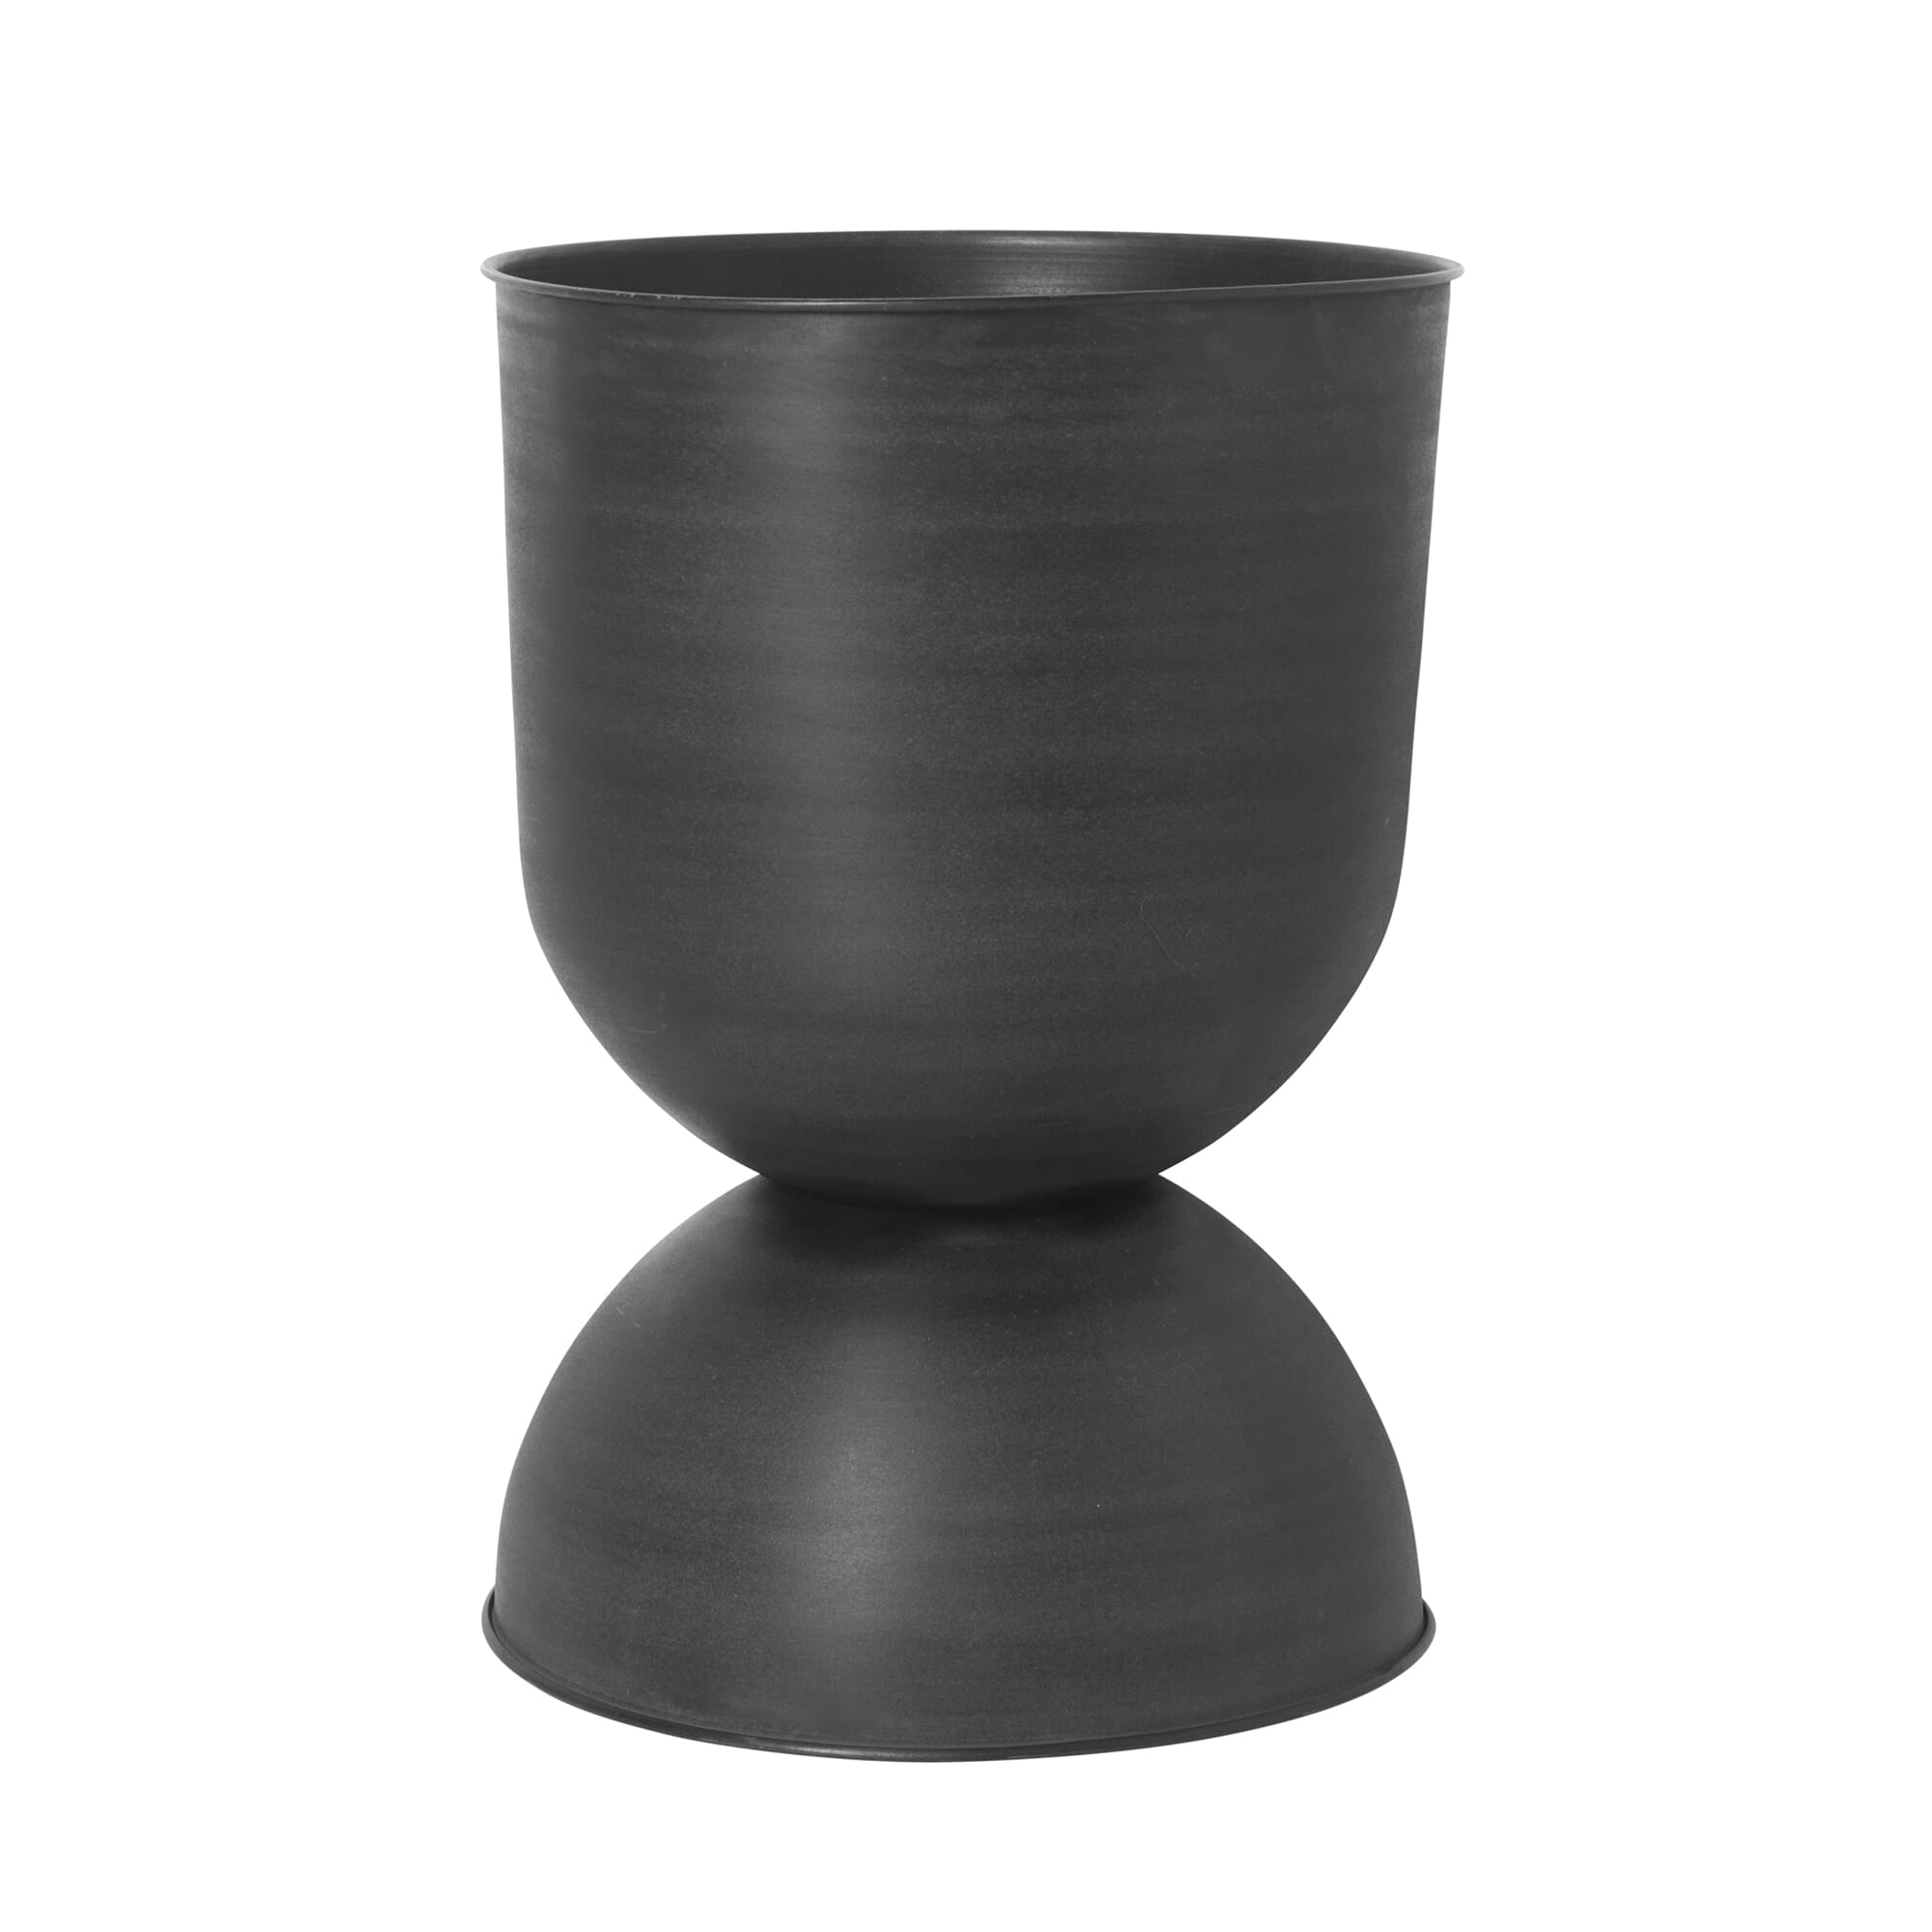 Bilde av Ferm Living - Ferm Living Hourglass Pot Black Large - Lunehjem.no - Interiør På Nett